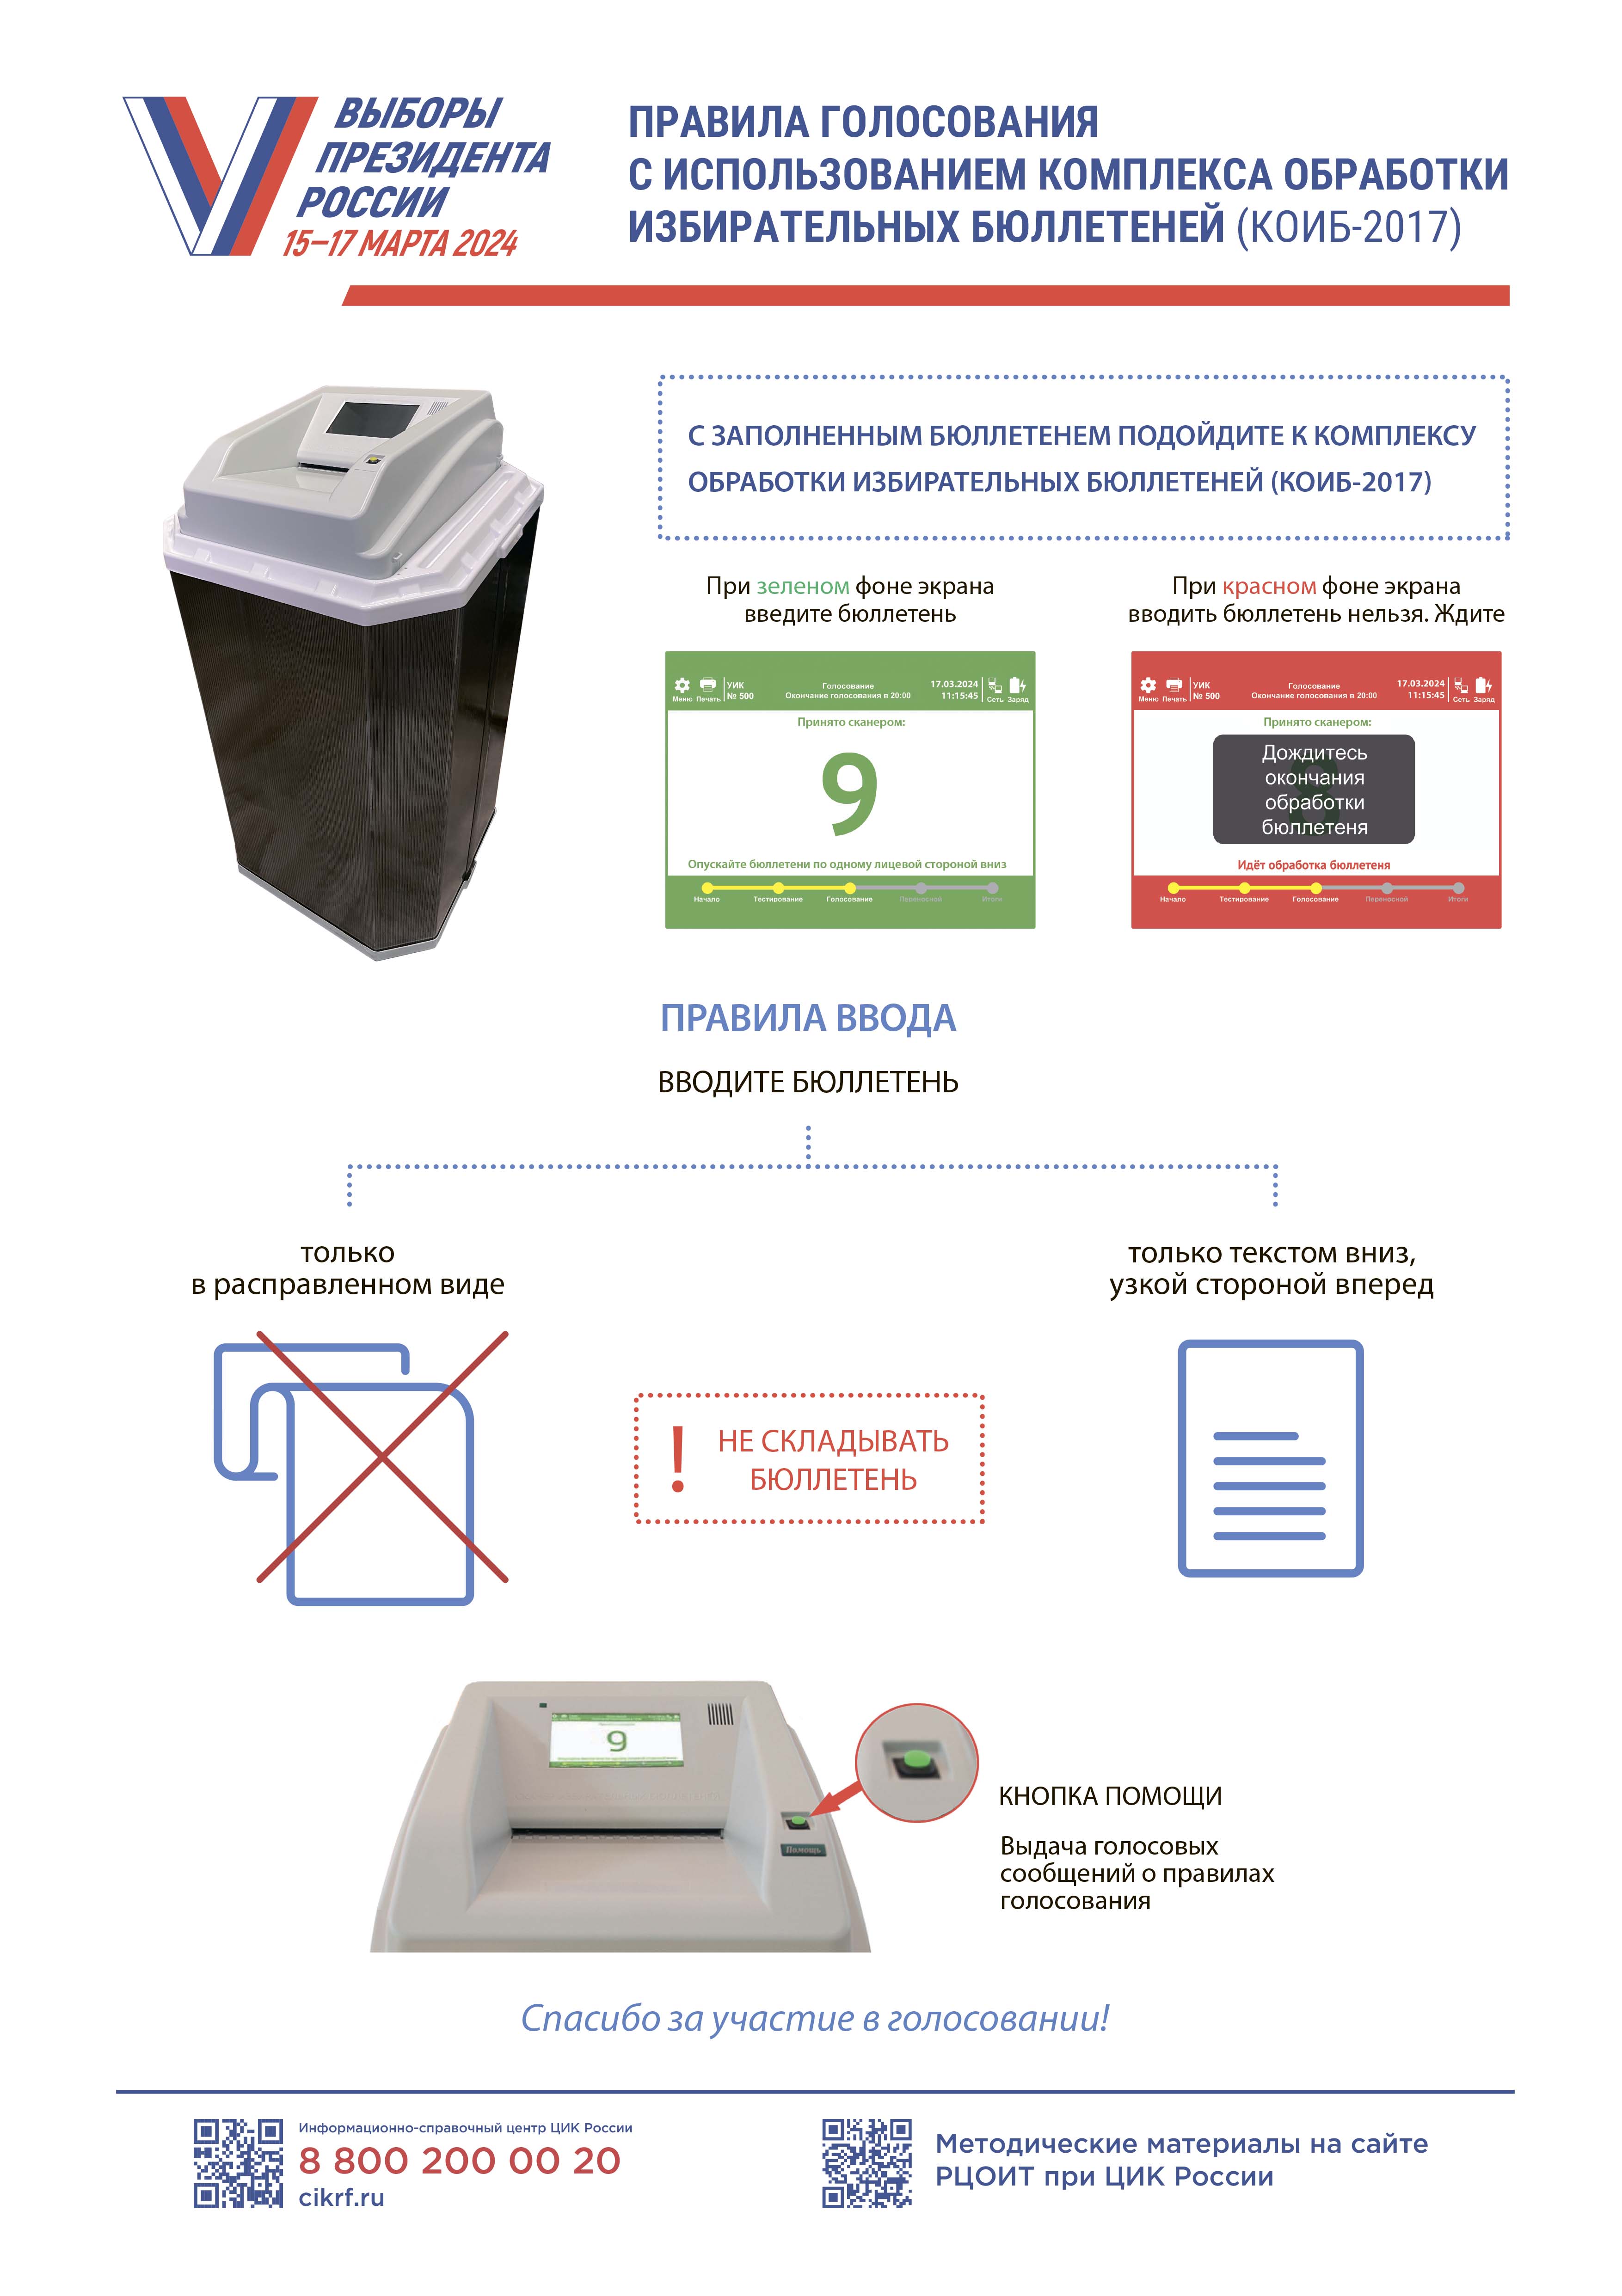 Правила голосования с использованием комплекса обработки избирательных бюллетеней (КОИБ-2017 КРОК)